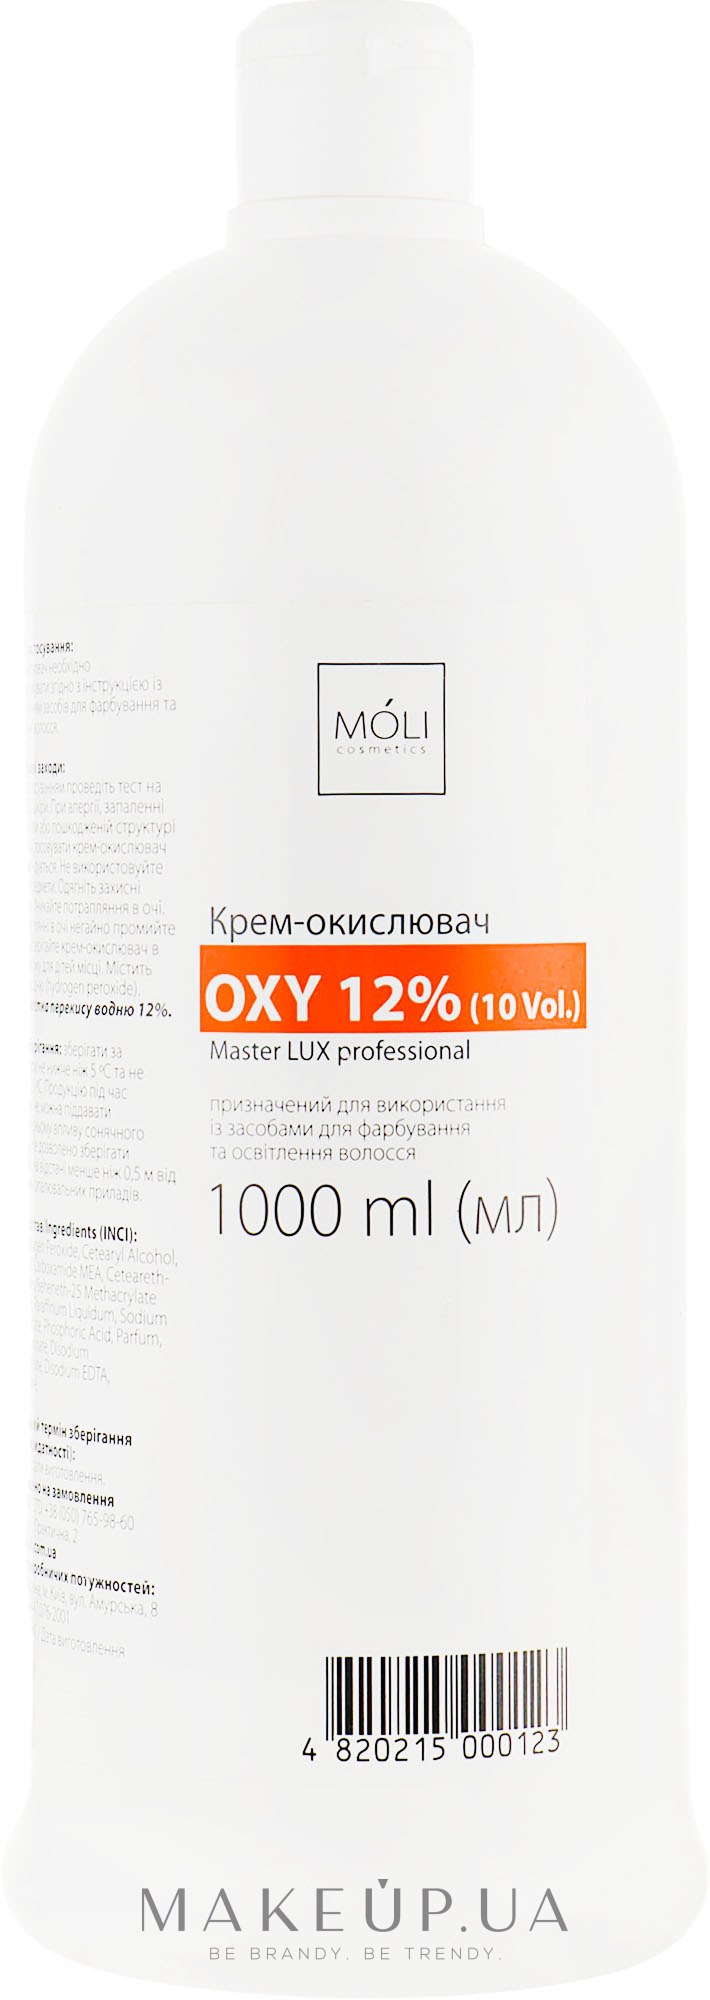 Окислювальна емульсія 12% - Moli Cosmetics Oxy 12% (10 Vol.) — фото 1000ml